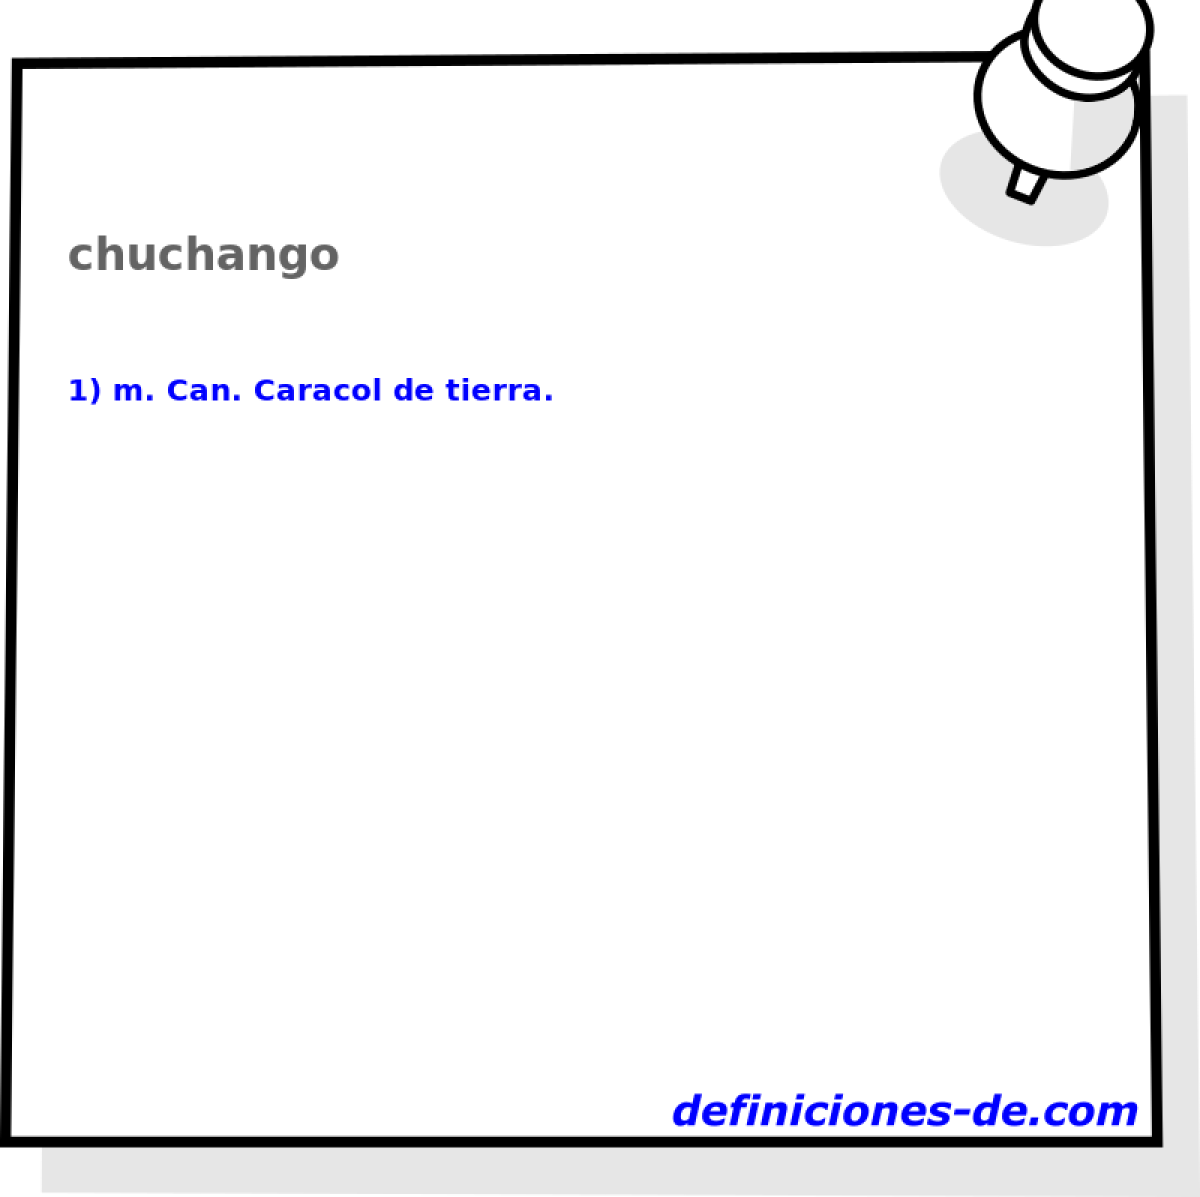 chuchango 